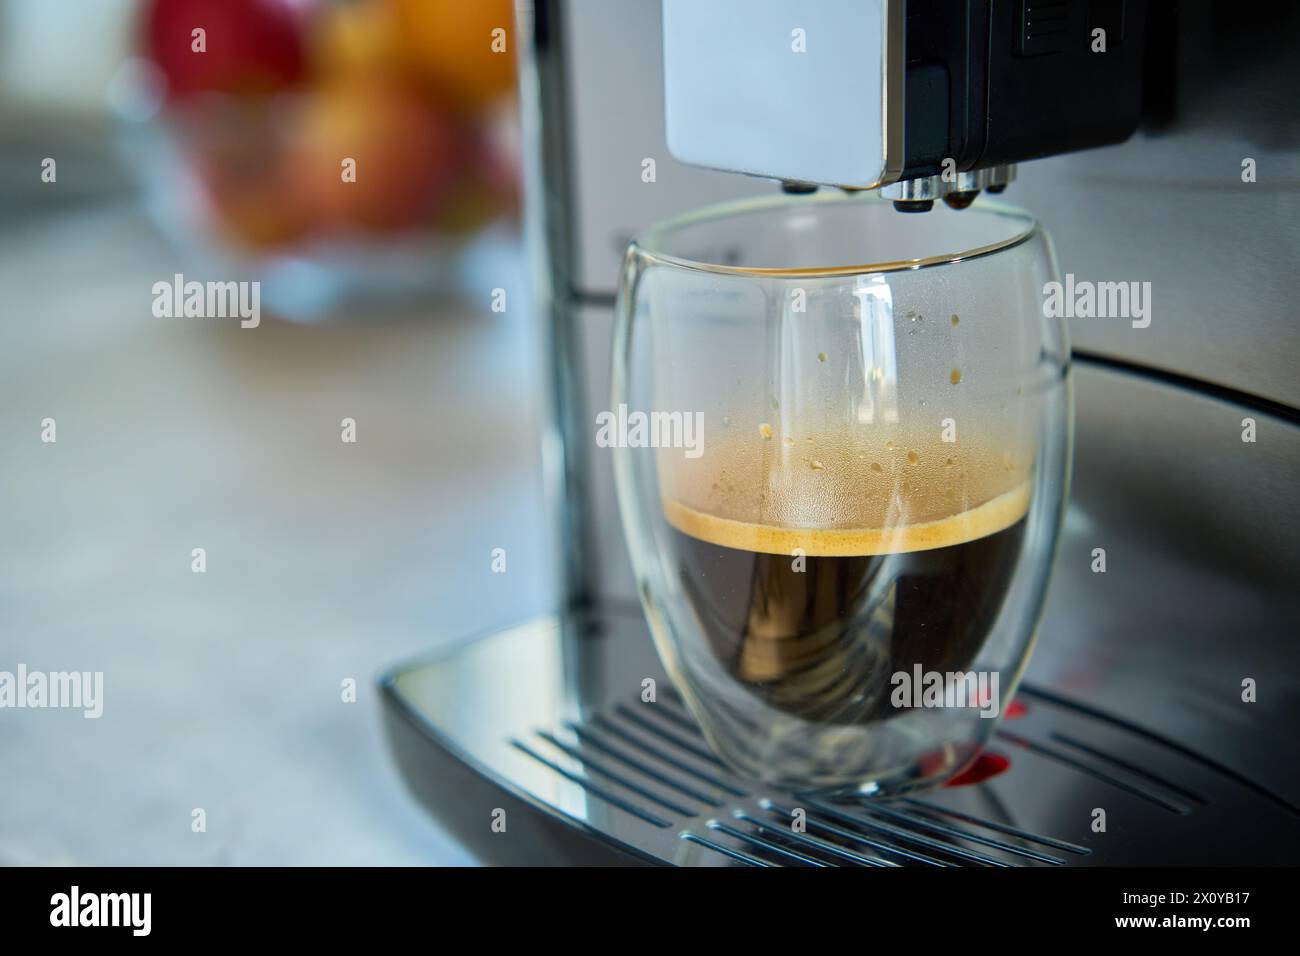 Expresso frais le matin. Machine à café dans la cuisine, gros plan. Cafetière moderne avec café fraîchement préparé dans une tasse en verre. Appareils de cuisine Banque D'Images